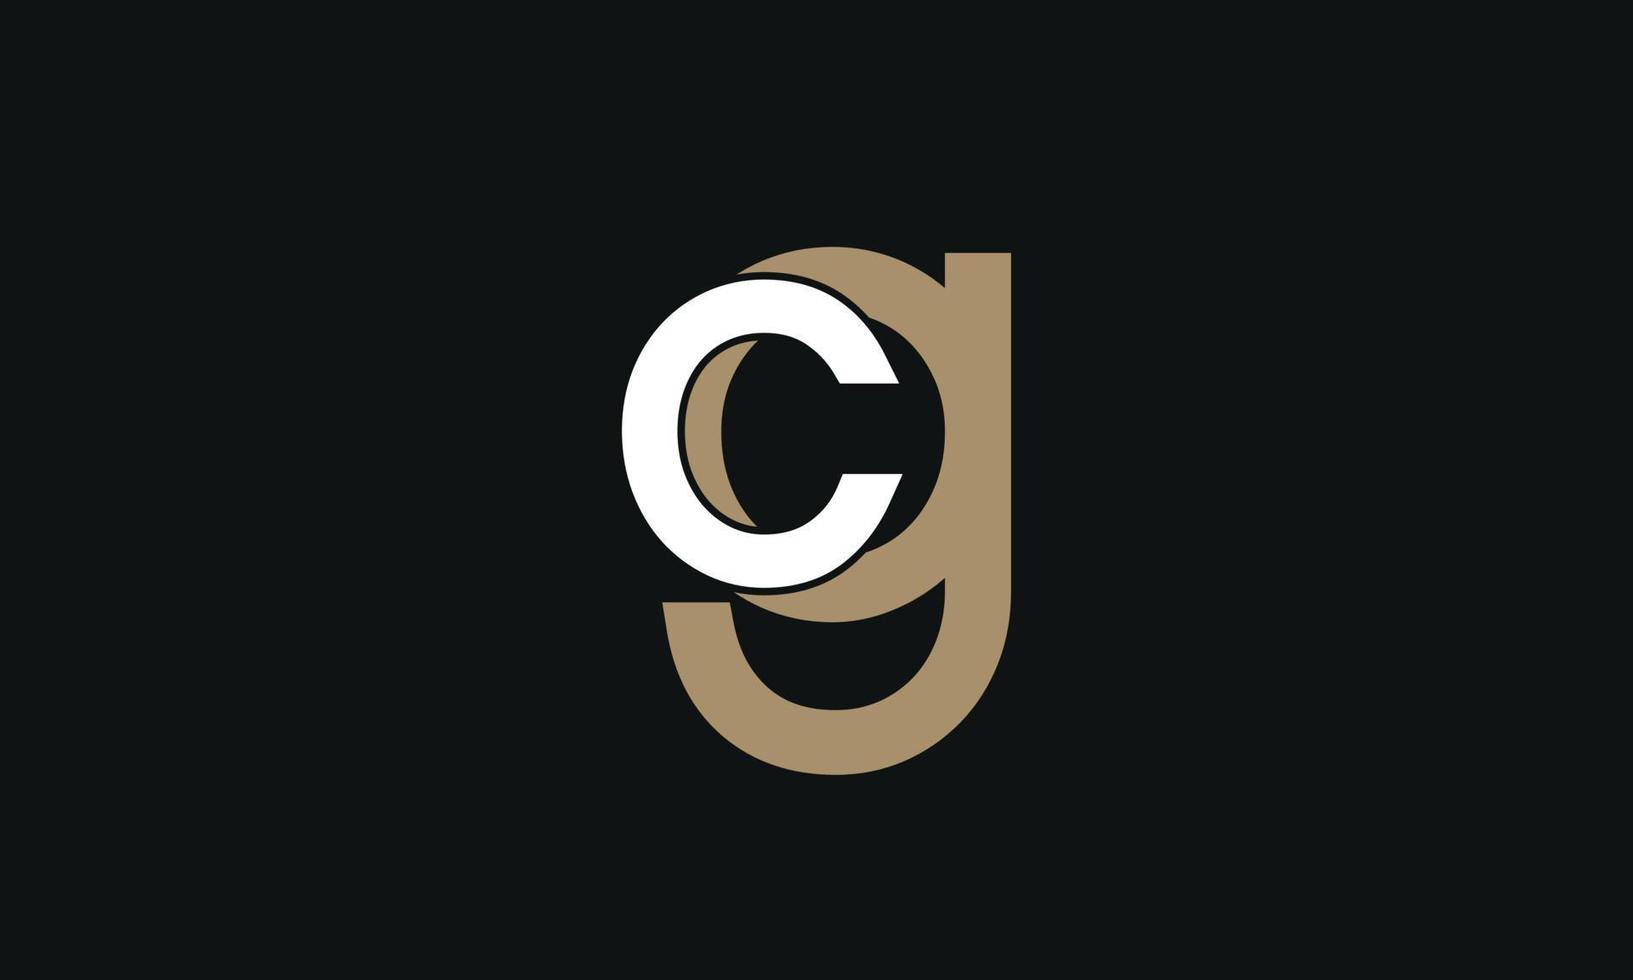 alphabet buchstaben initialen monogramm logo cg, gc, c und g vektor